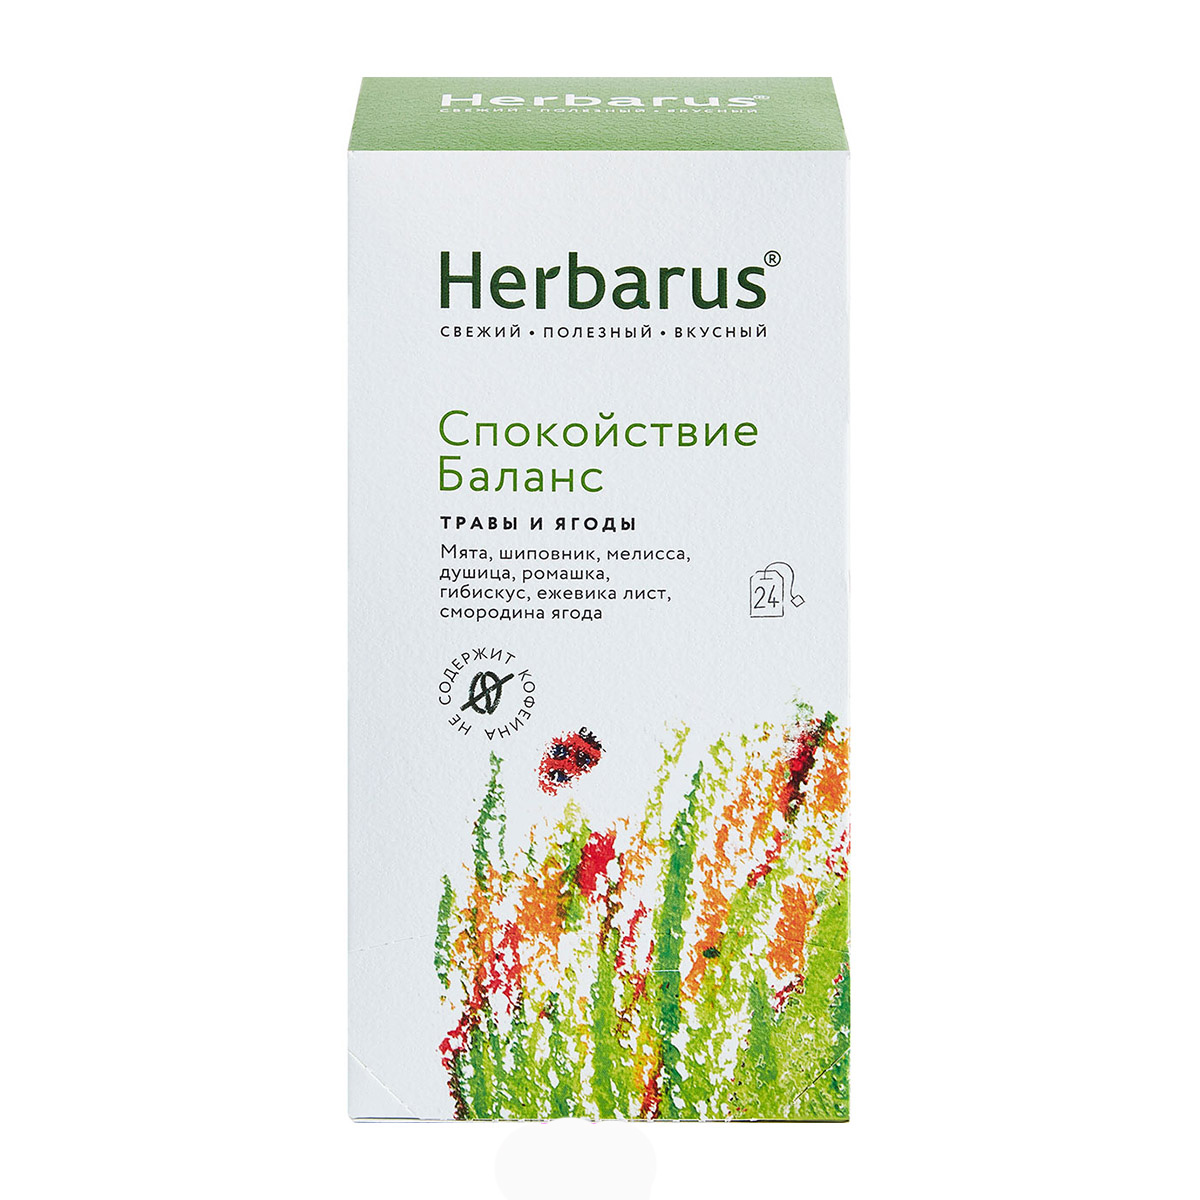 Herbarus Чайный напиток Спокойствие и баланс, 24 шт х 1,8 г (Herbarus, Травы и ягоды) чайный напиток herbarus заряд витаминов 50 г